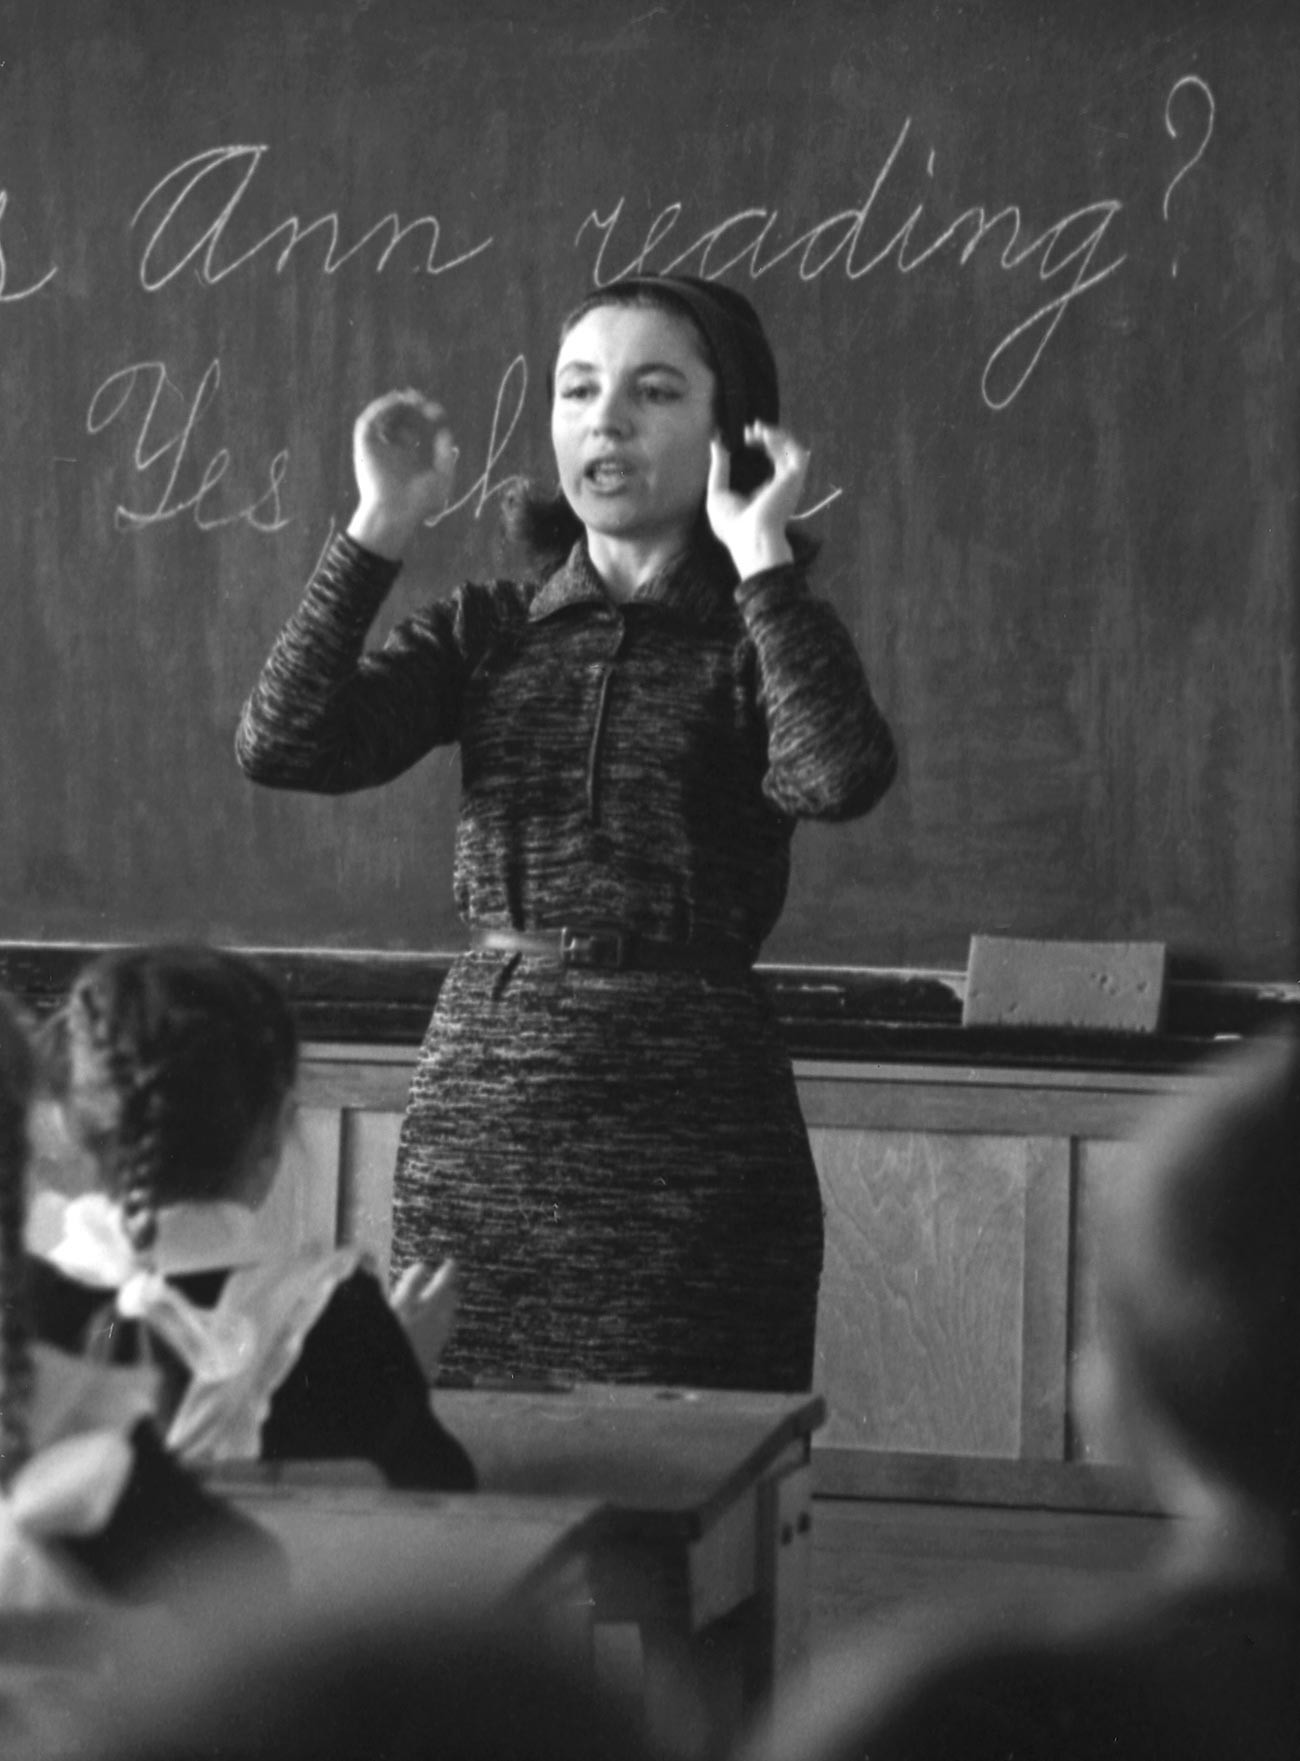 Au début des années 1960, pendant le dégel, l'apprentissage des langues est devenu un élément central de la politique étrangère en URSS.